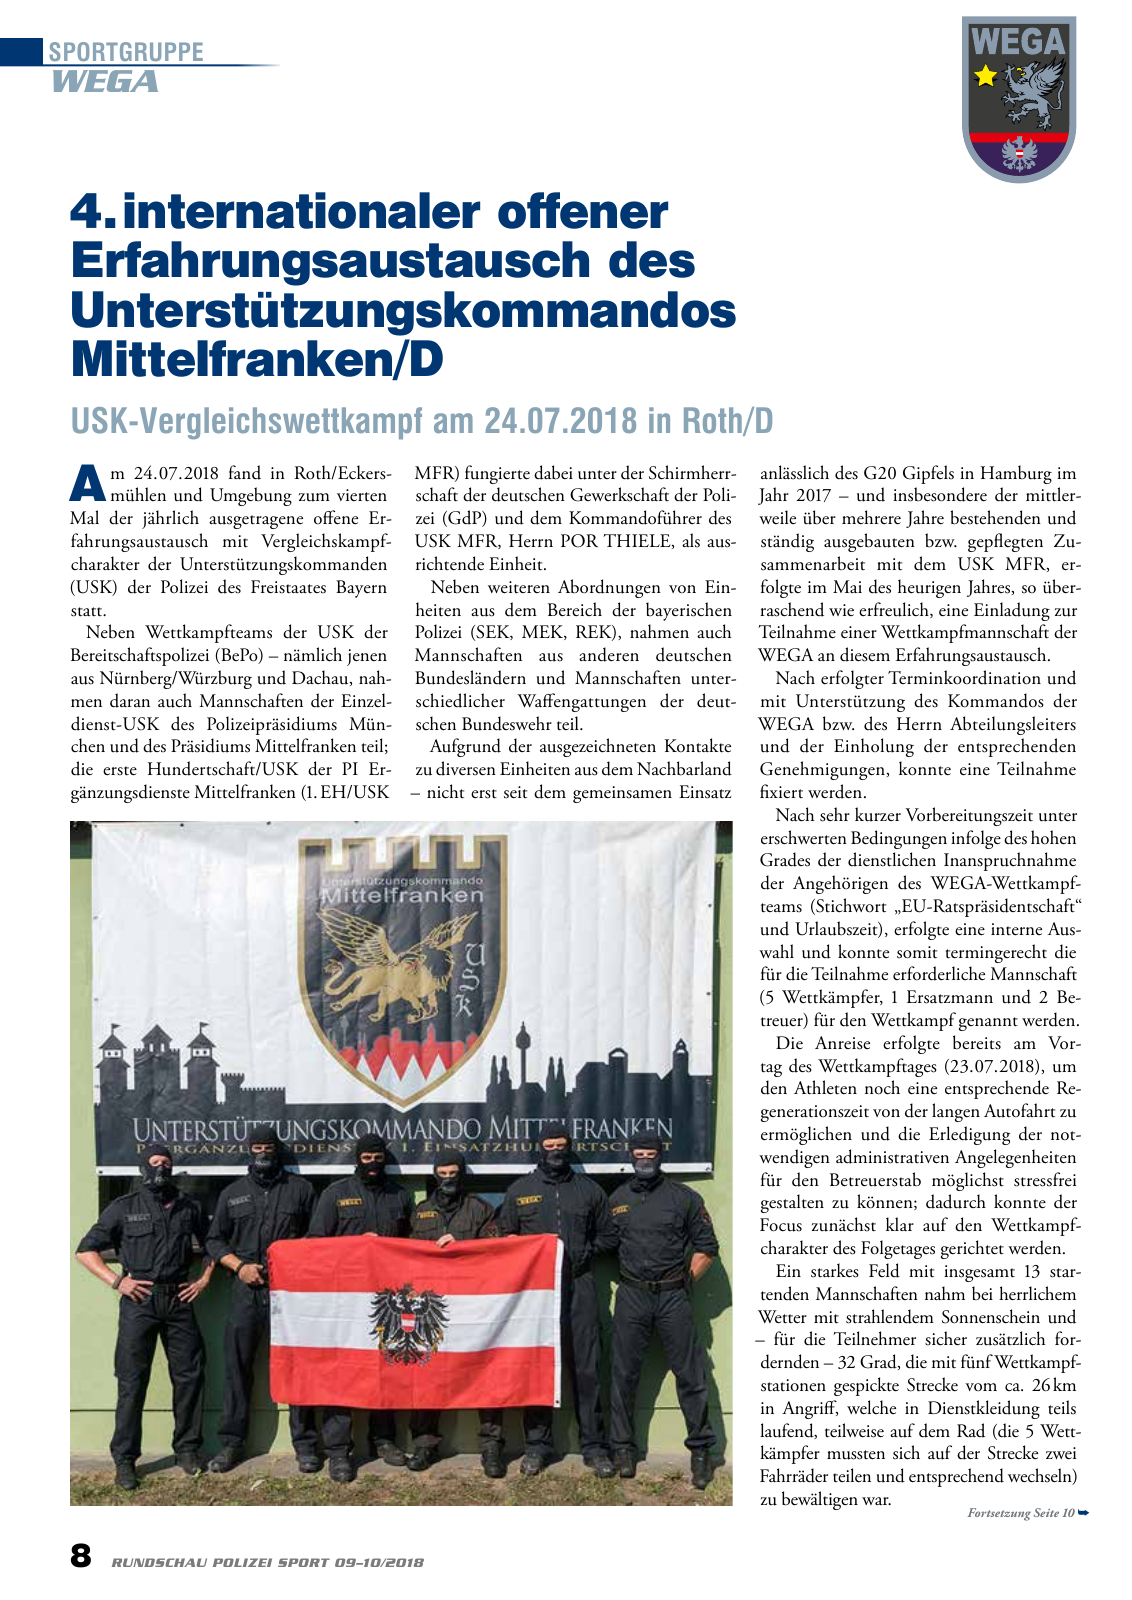 Vorschau Rundschau Polizei Sport 09-10/2018 Seite 8